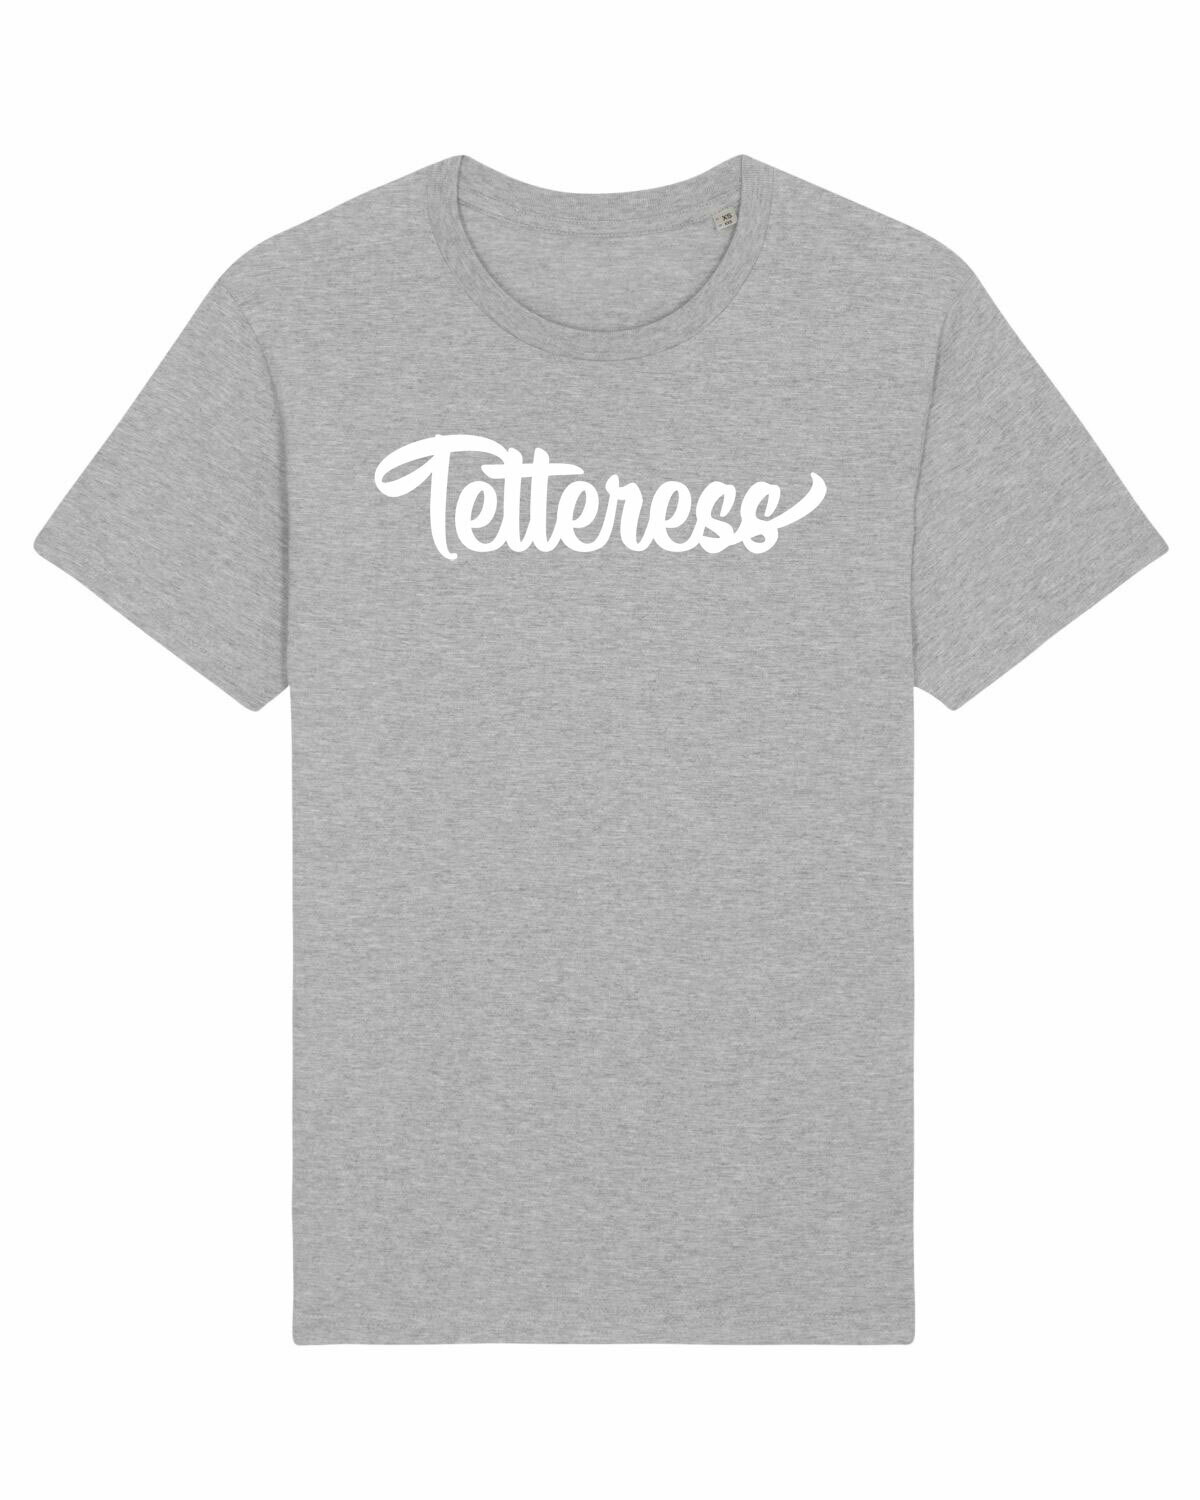 T-shirt Tetteress